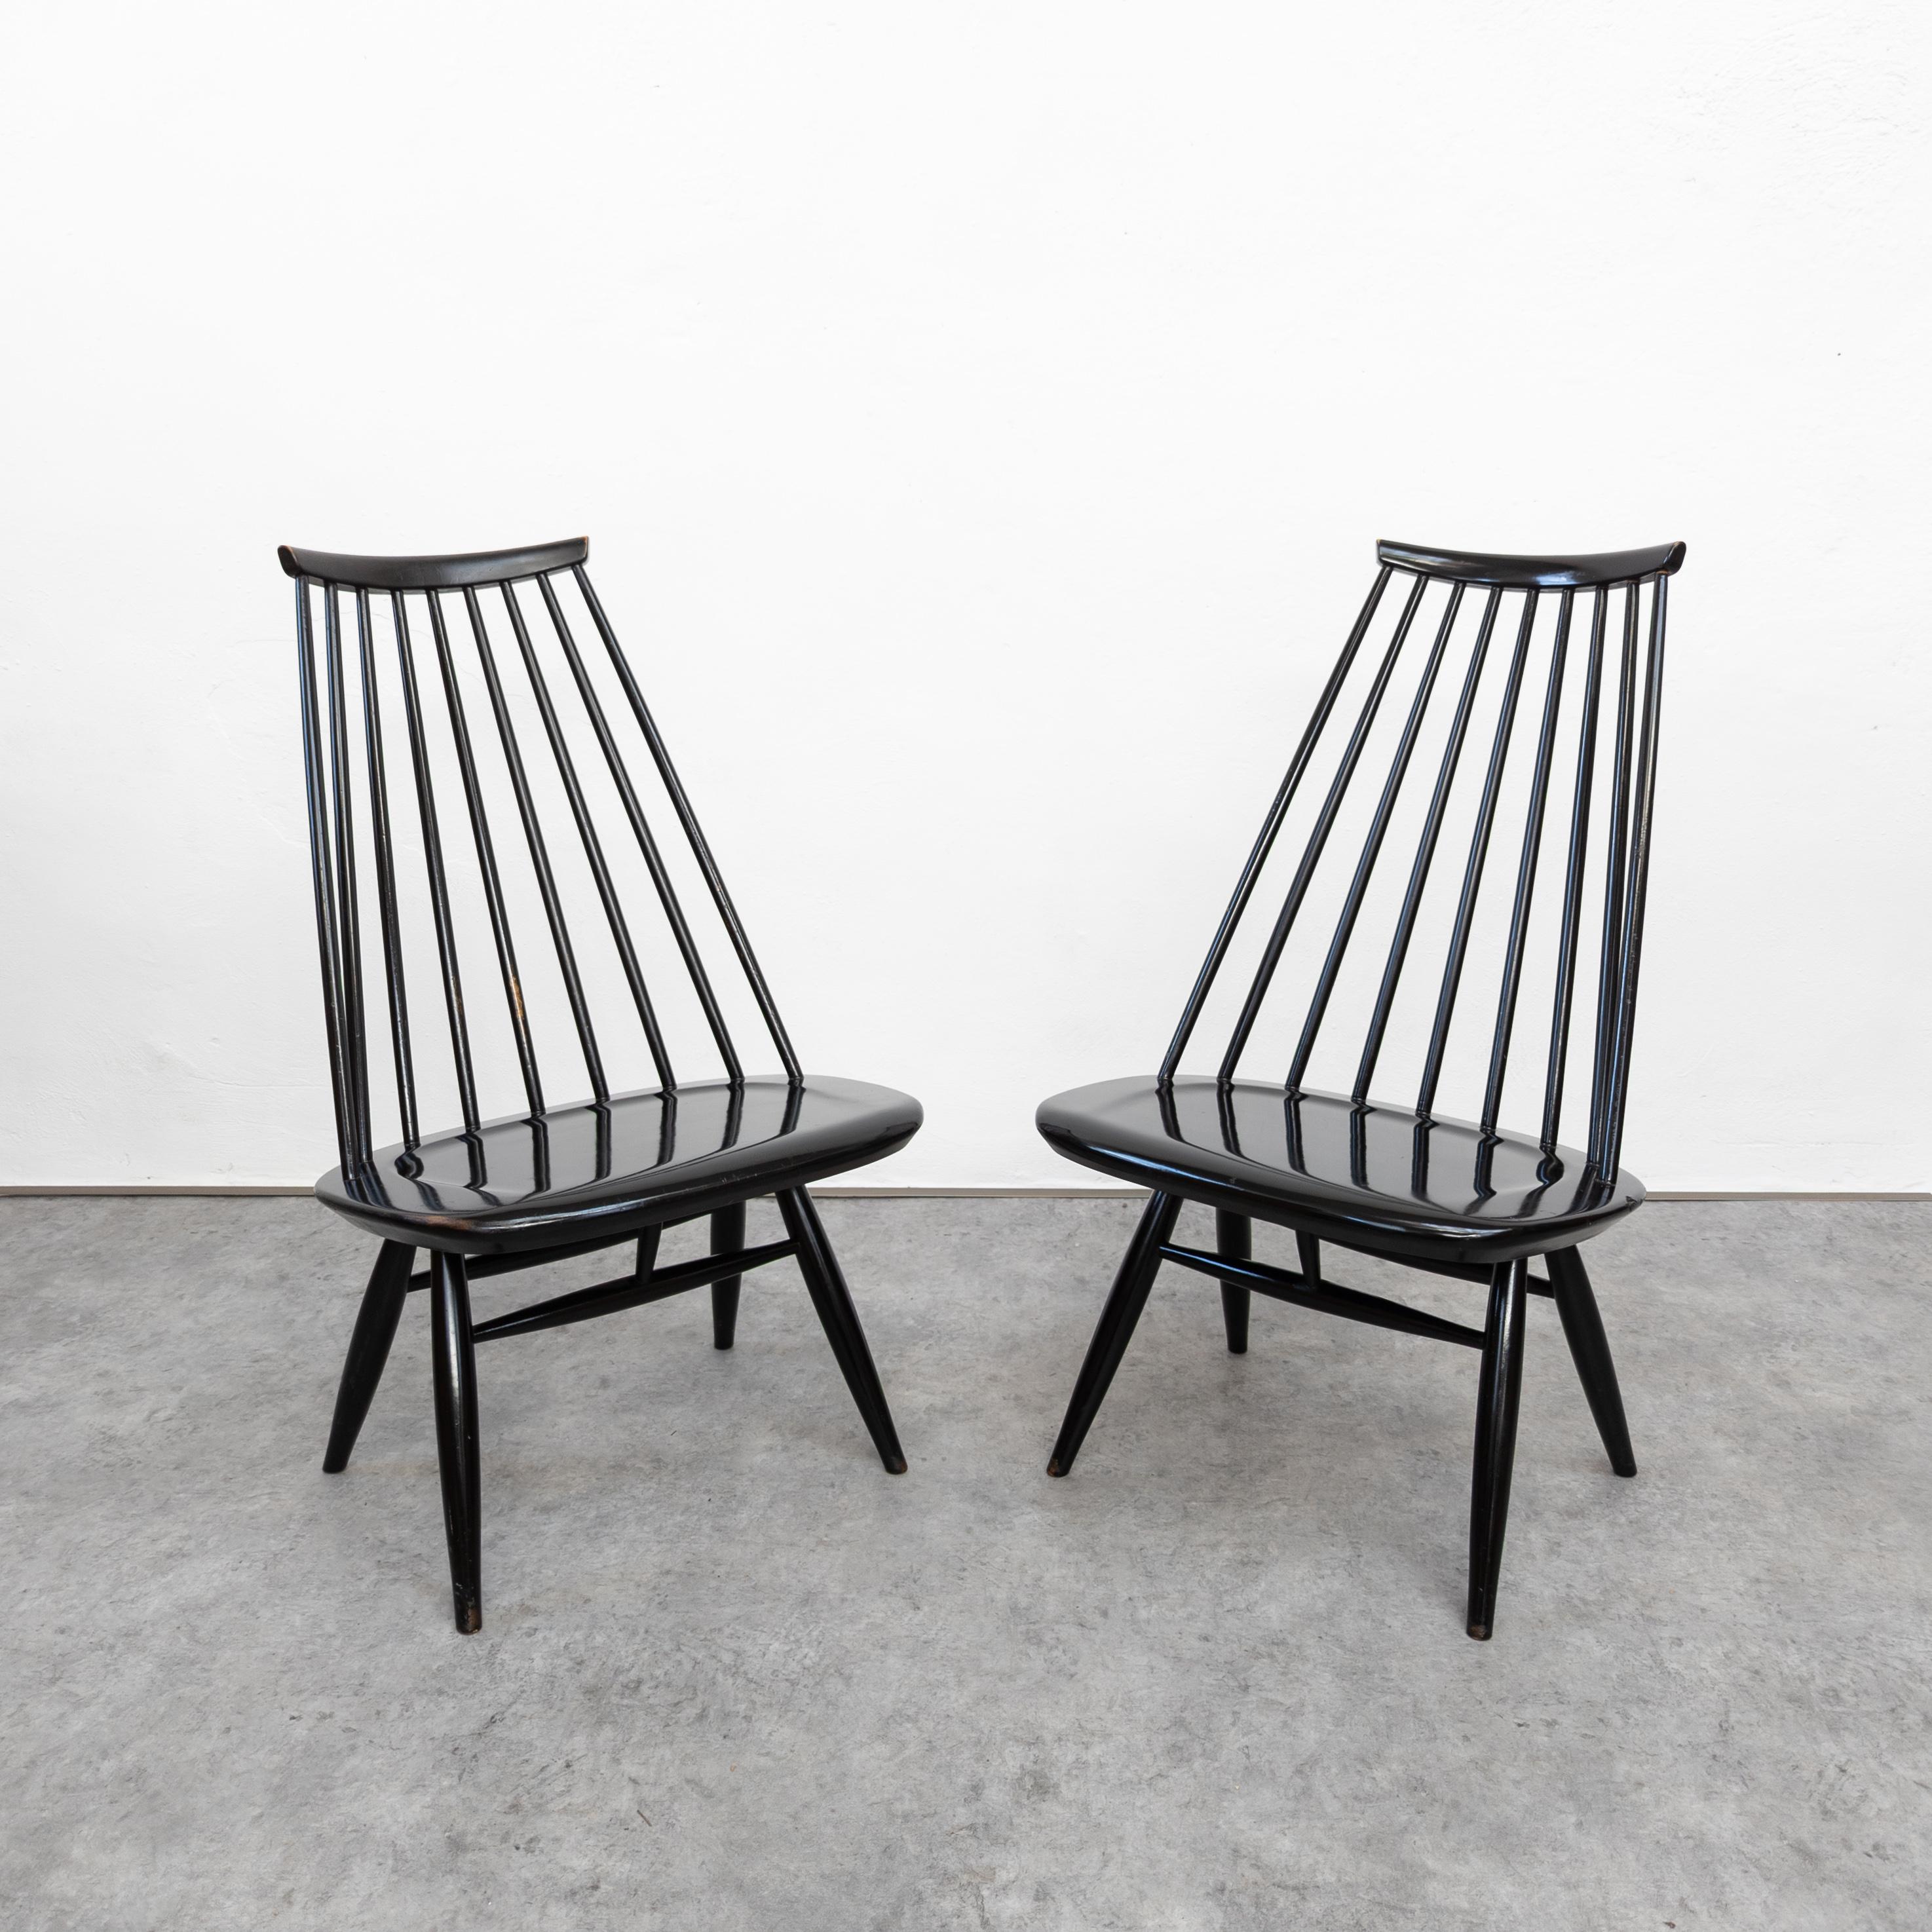 Die Mademoiselle Lounge Chairs, die von Ilmari Tapiovaara für Asko entworfen wurden, vereinen Eleganz und Komfort. Diese Stühle mit ihrer zeitlosen Ästhetik verfügen über einen anmutig geschwungenen Holzrahmen, der ein harmonisches Gleichgewicht